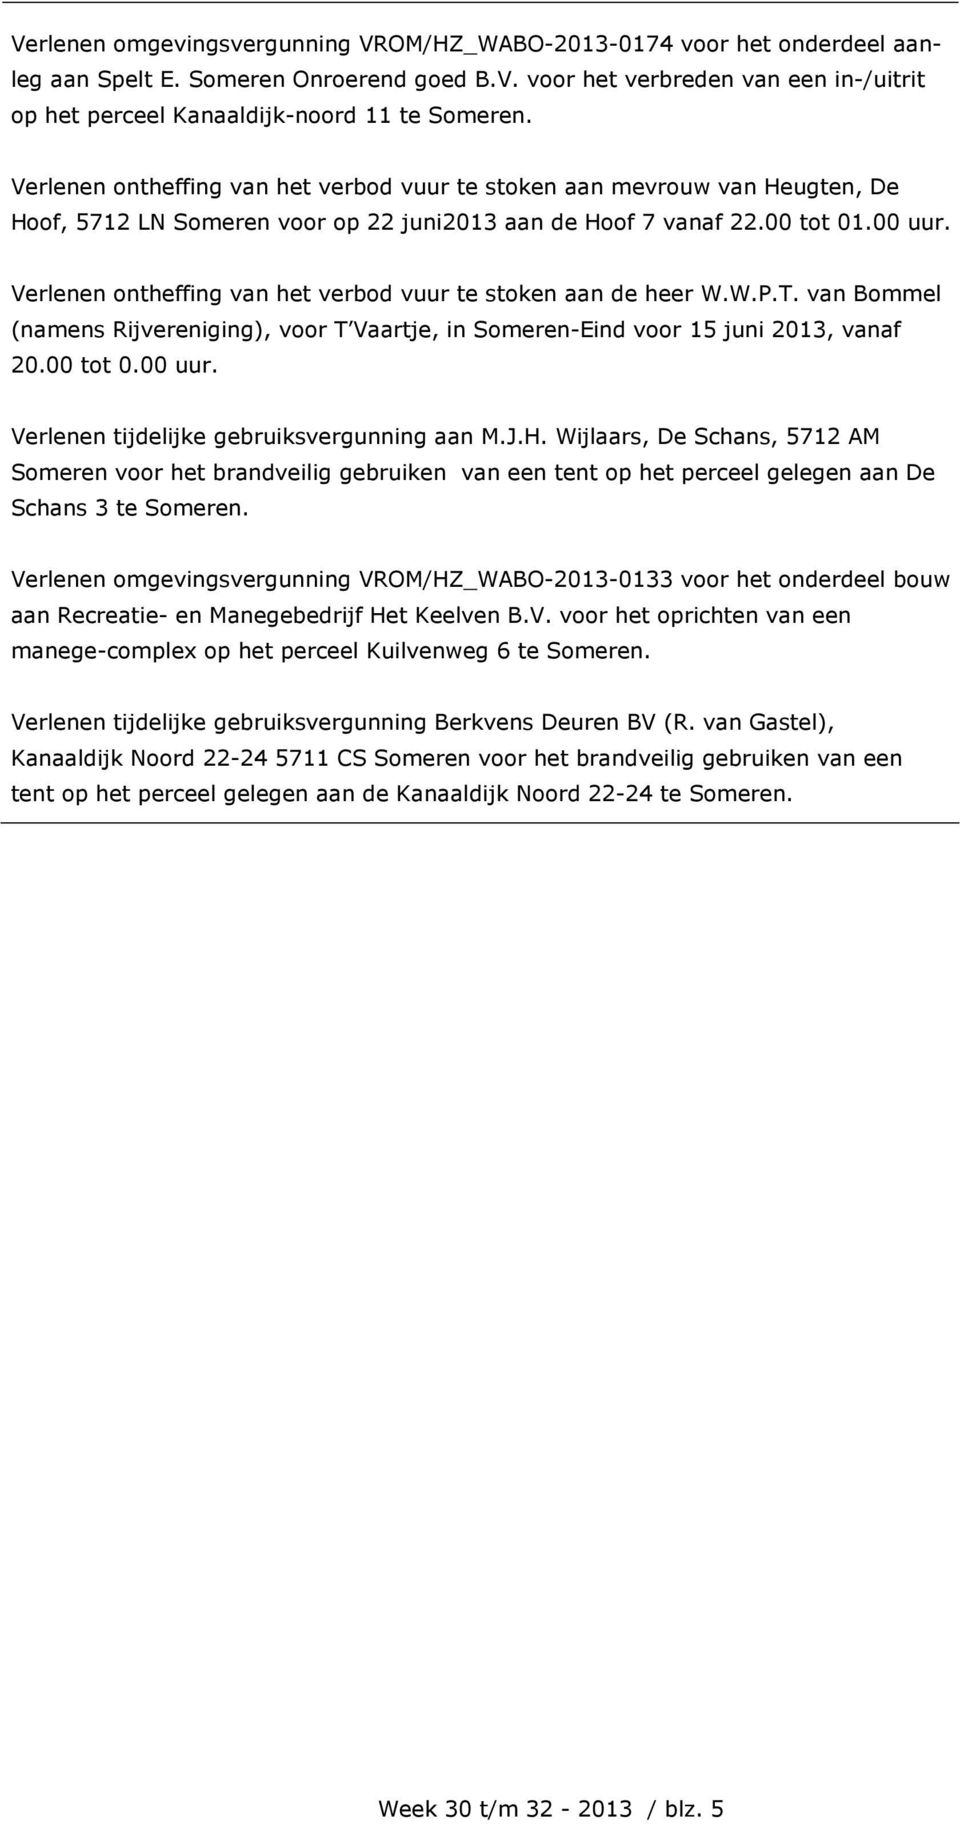 Verlenen ontheffing van het verbod vuur te stoken aan de heer W.W.P.T. van Bommel (namens Rijvereniging), voor T Vaartje, in Someren-Eind voor 15 juni 2013, vanaf 20.00 tot 0.00 uur.